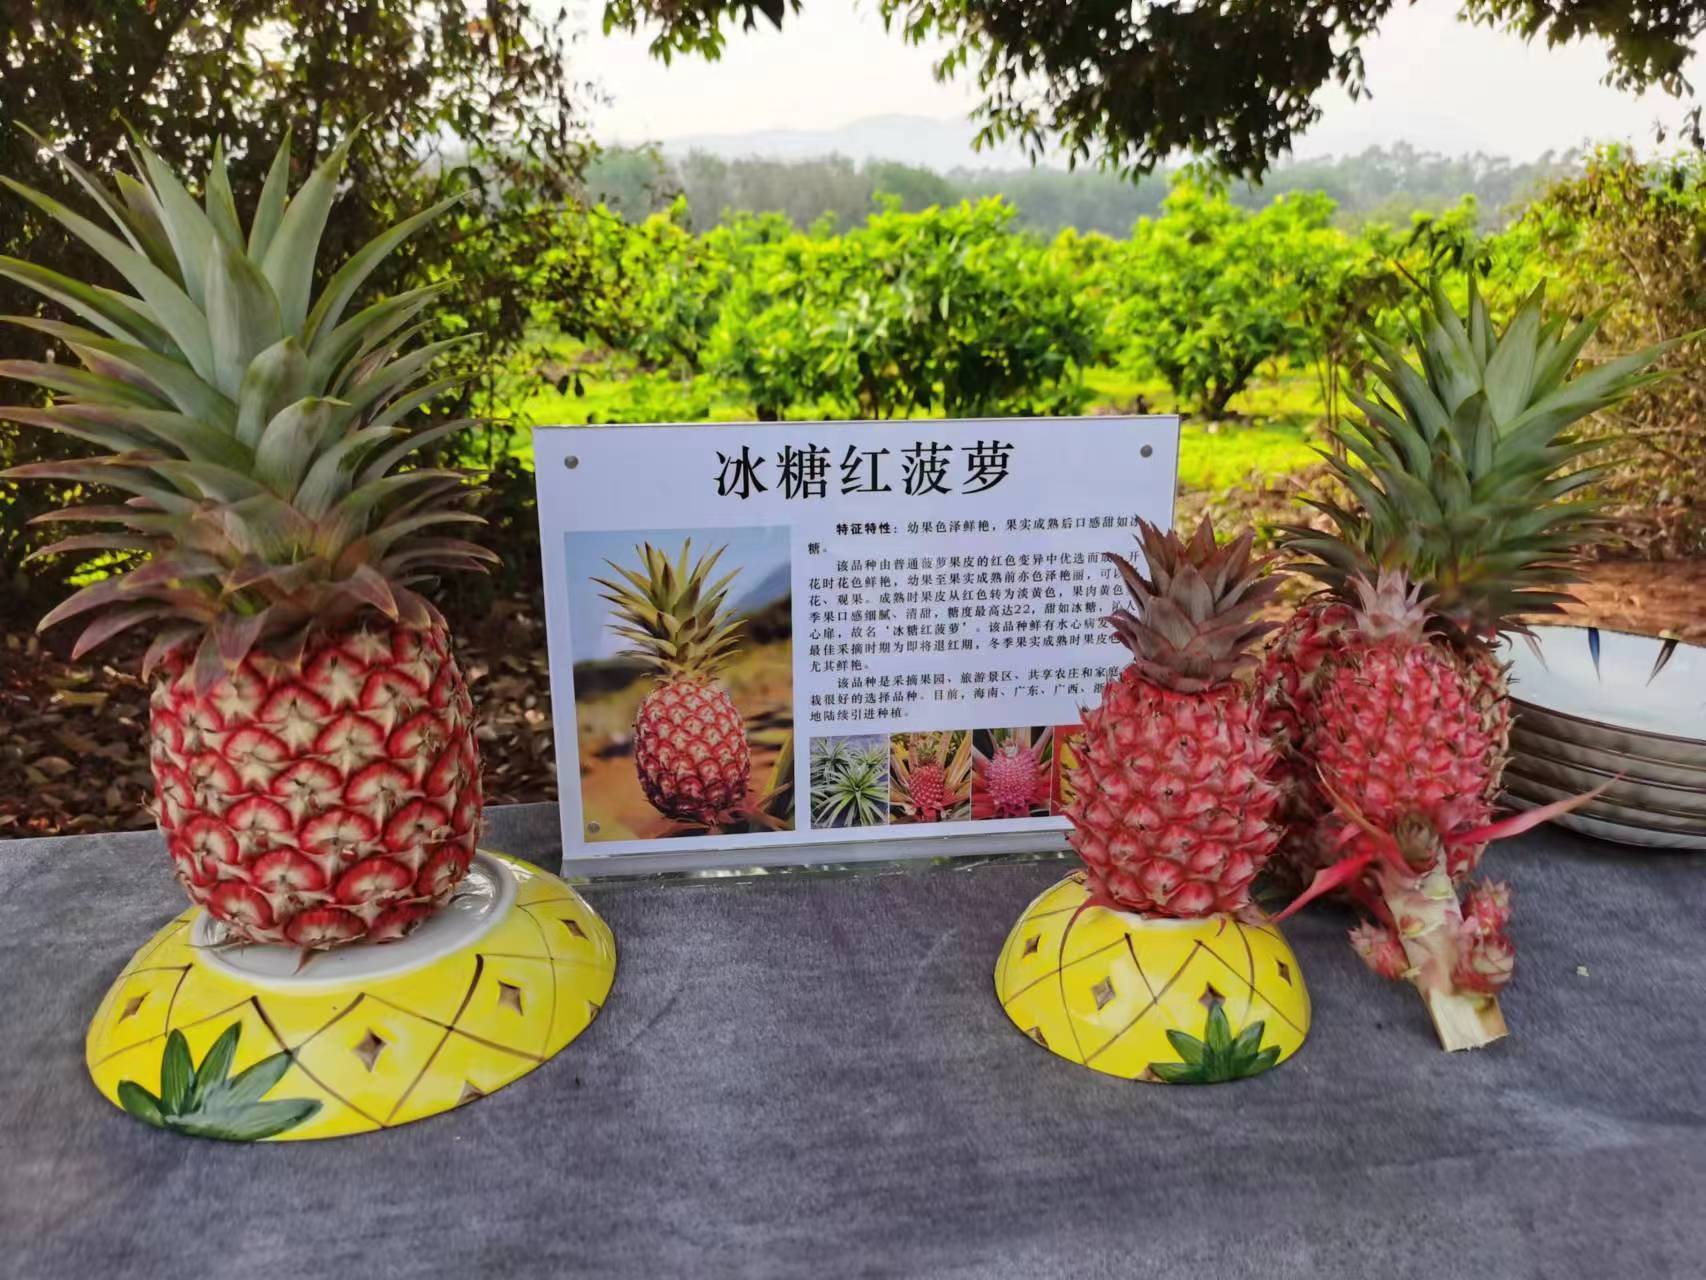 冰糖红菠萝见过吗？中国热科院品资所在儋州举办菠萝新品观摩会